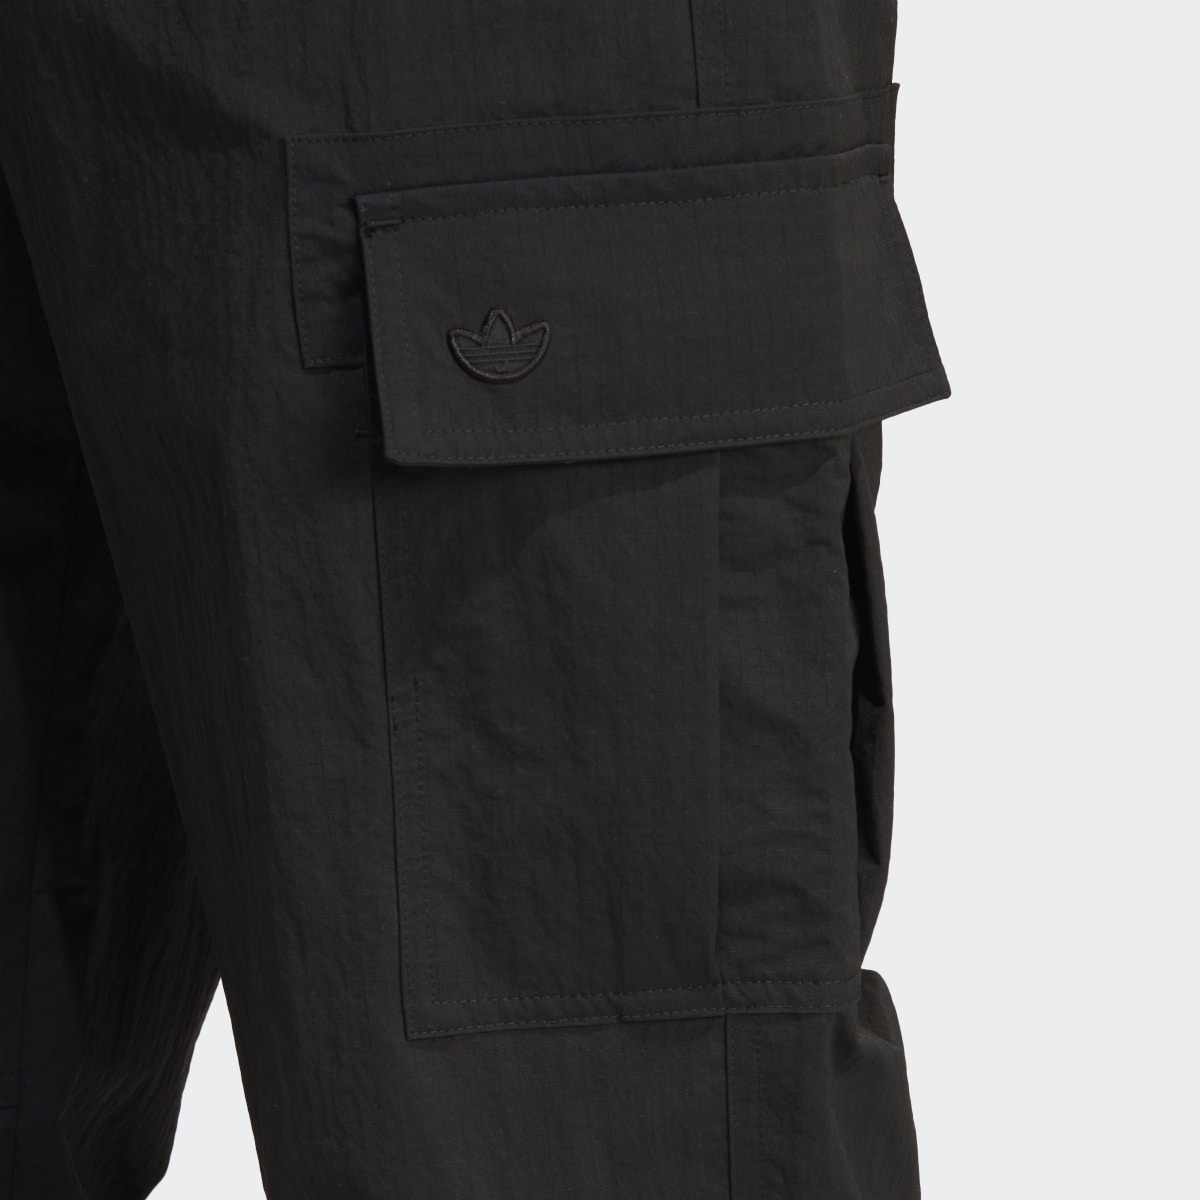 Adidas Premium Essentials Cargo Pants. 6